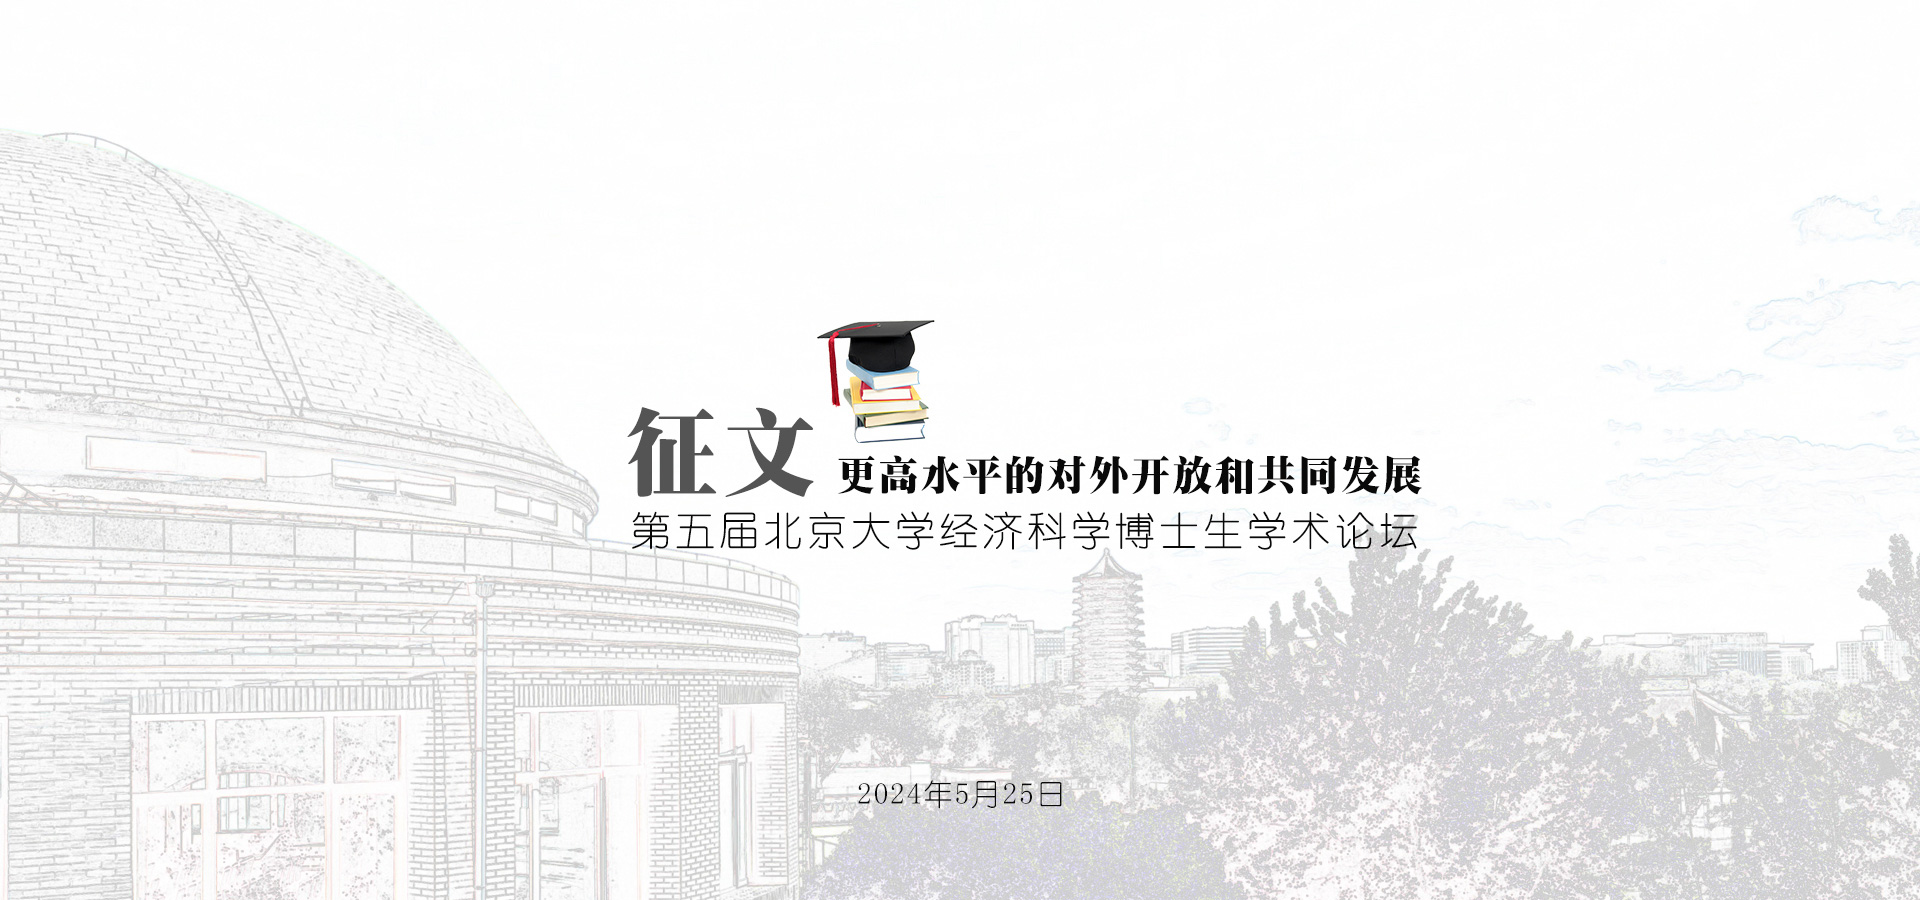 征文 | 第五届北京大学经济科学博士生学术论坛